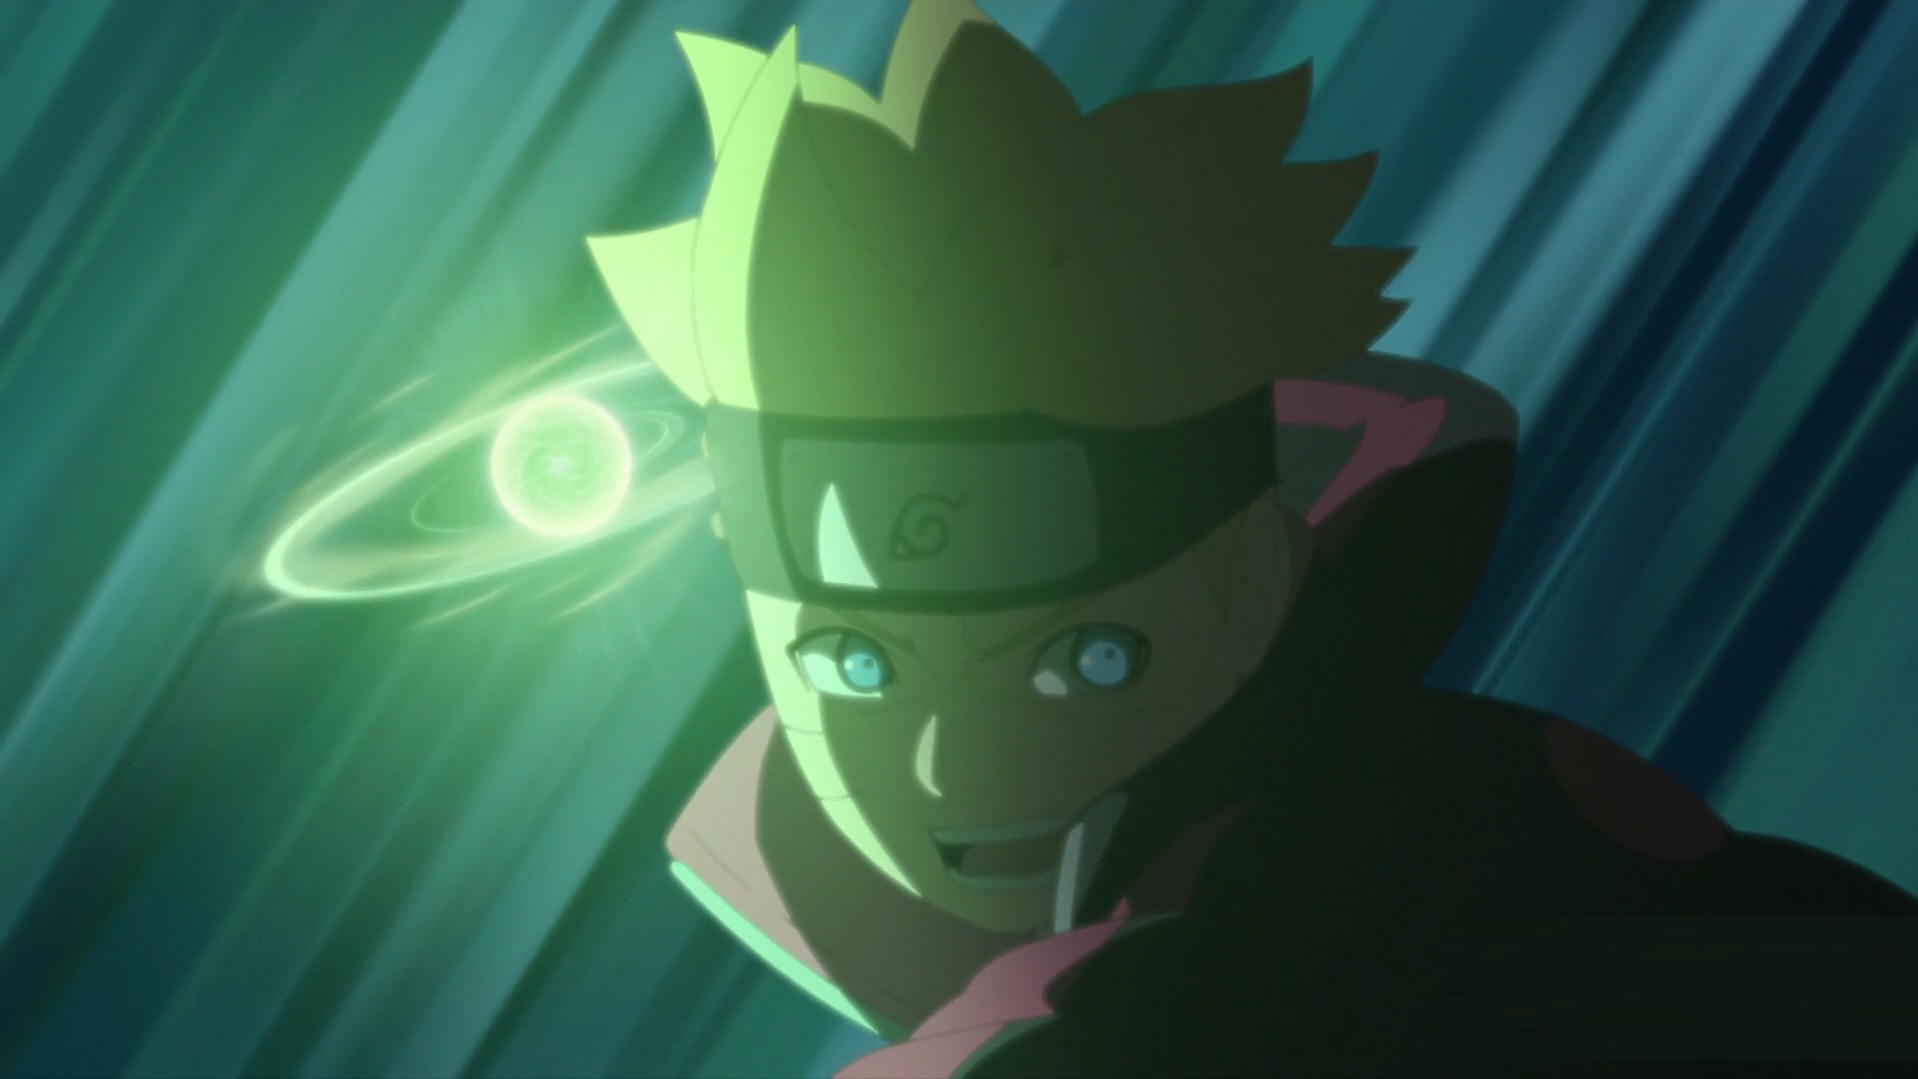 Sinopses dos próximos episódios de Boruto: Naruto Next